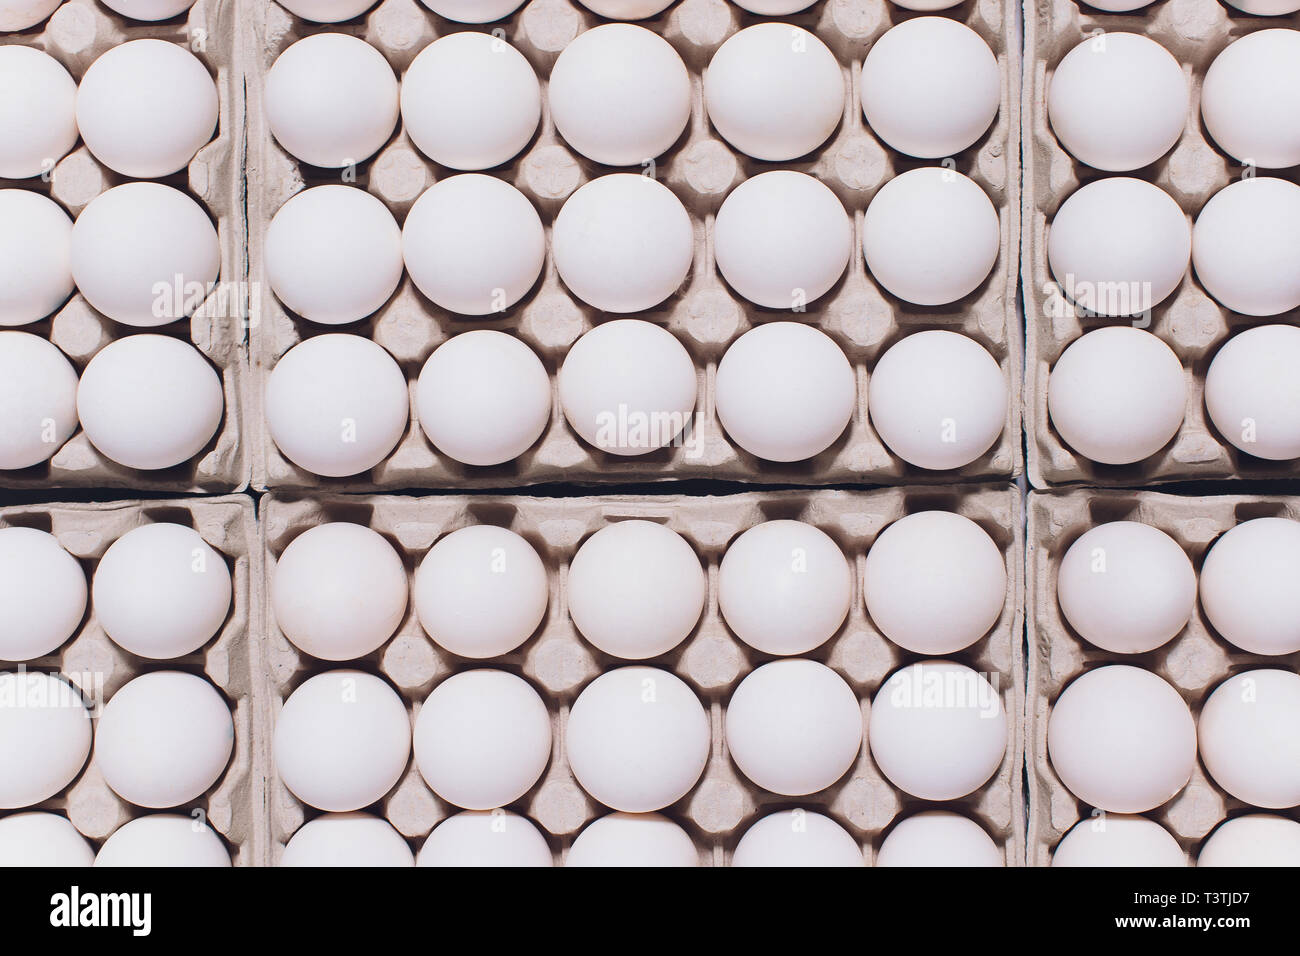 Huevos blancos de una gallina en inofensivos, embalaje de cartón sobre un fondo blanco. Foto de stock